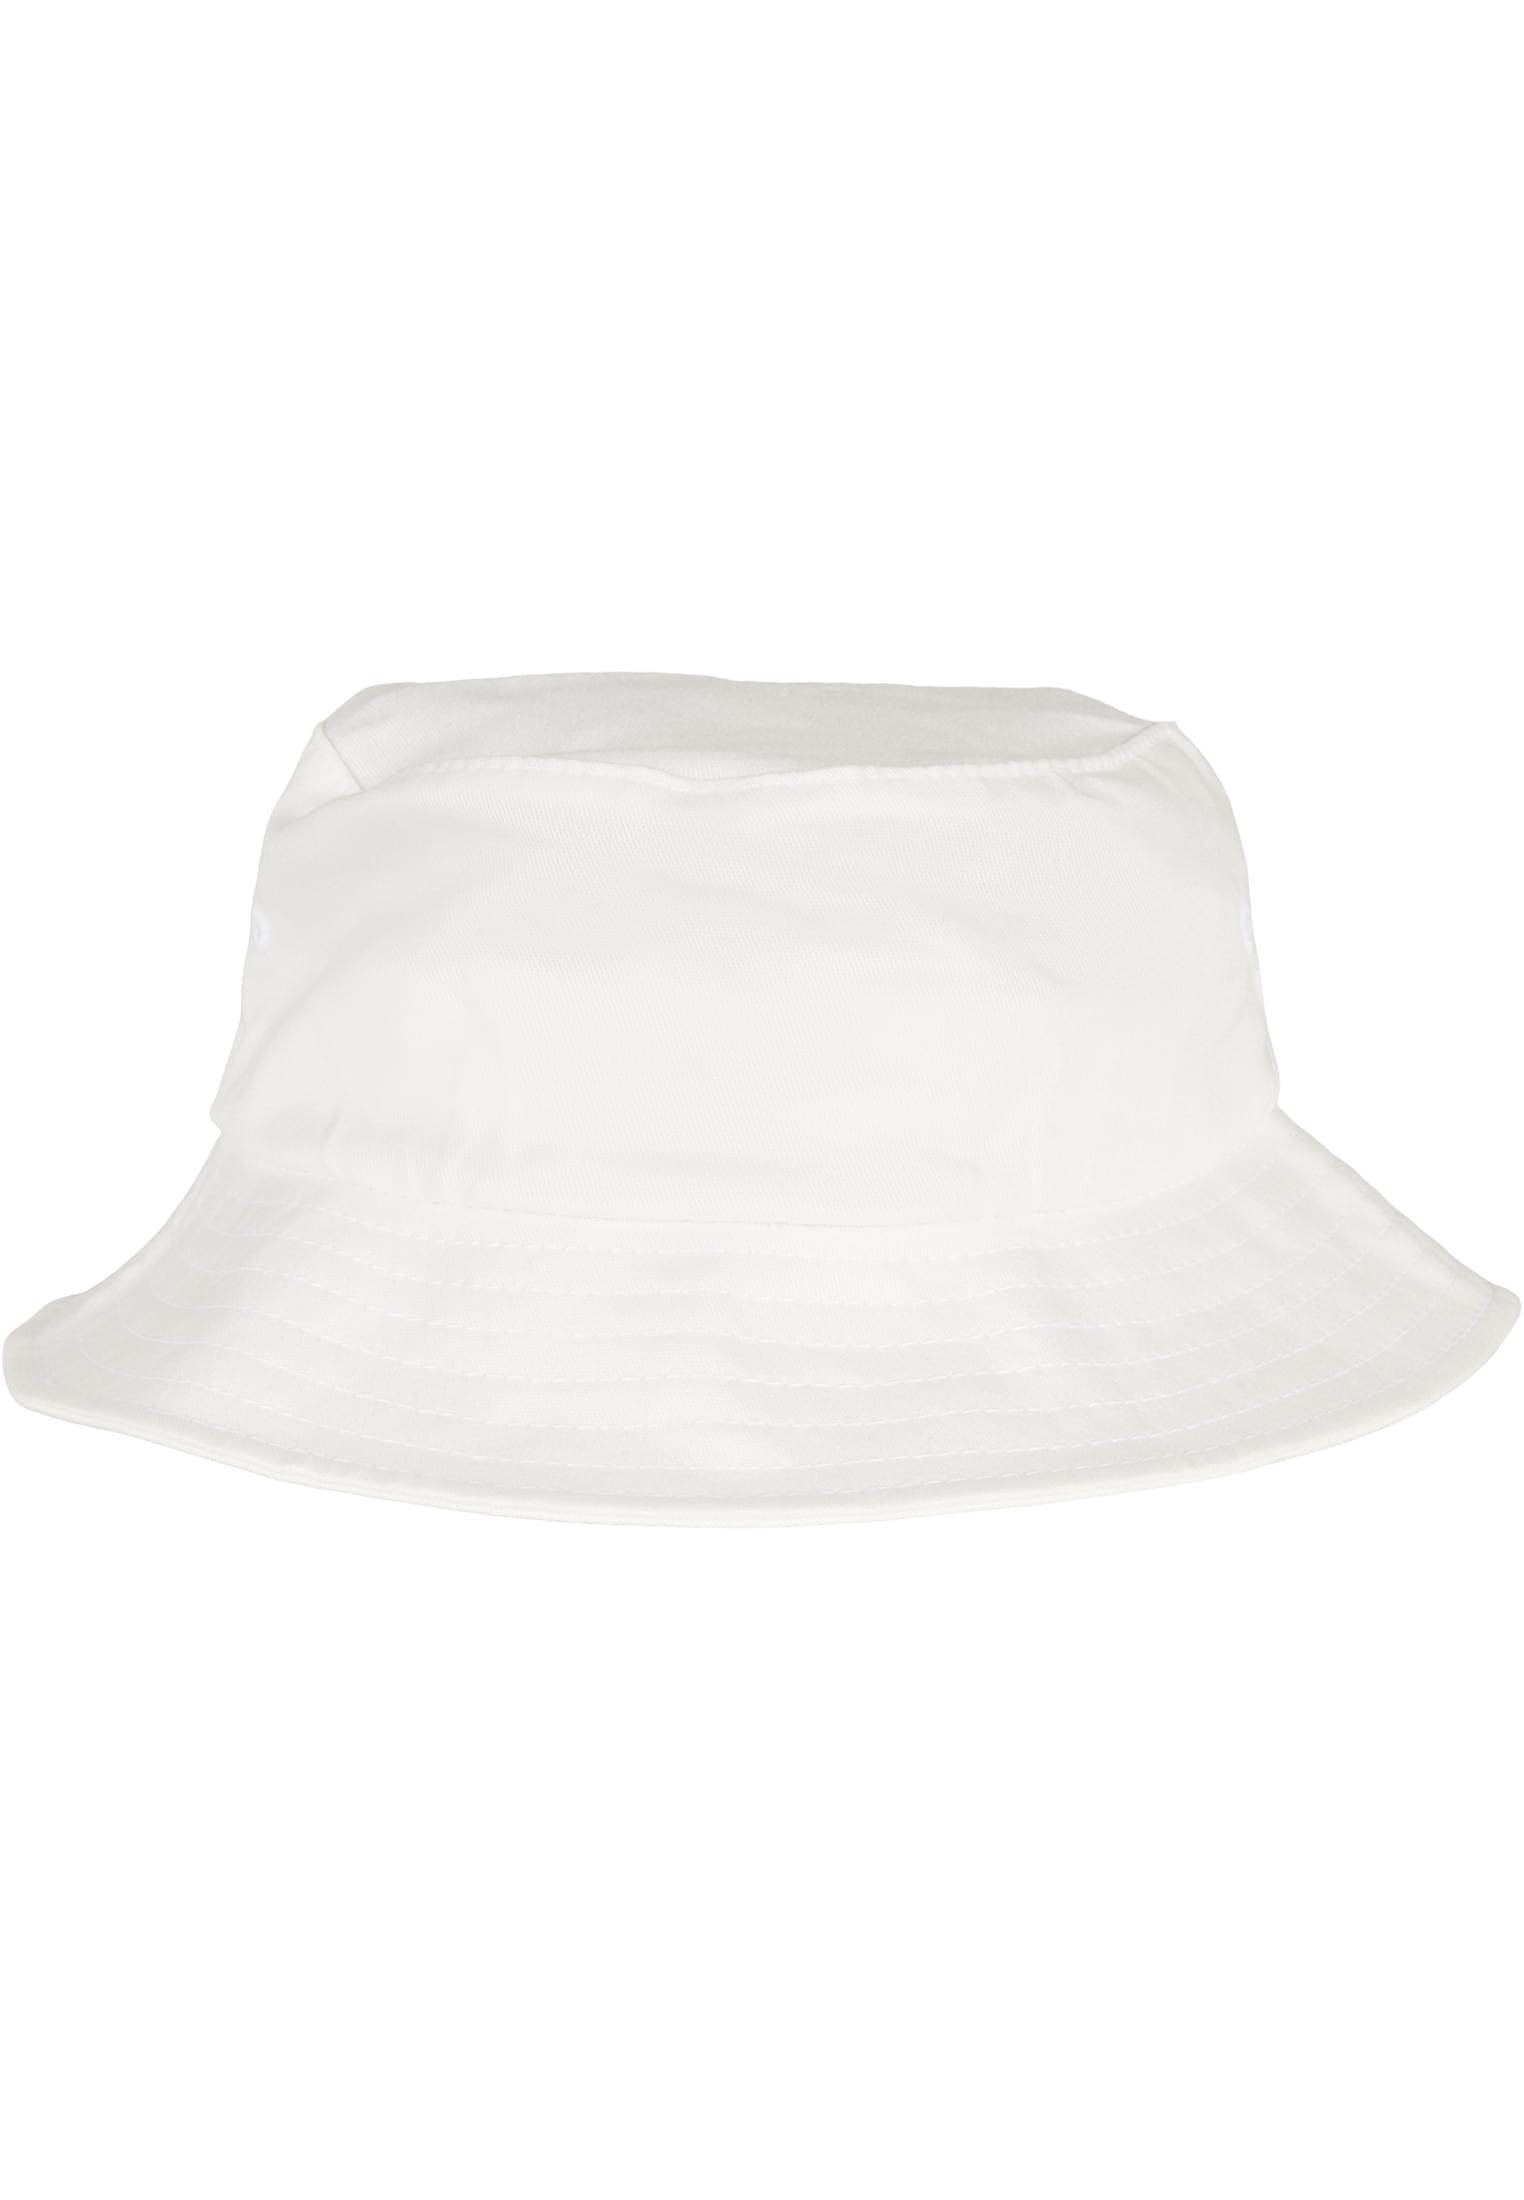 Children's Cap Flexfit Cotton Twill Bucket, White